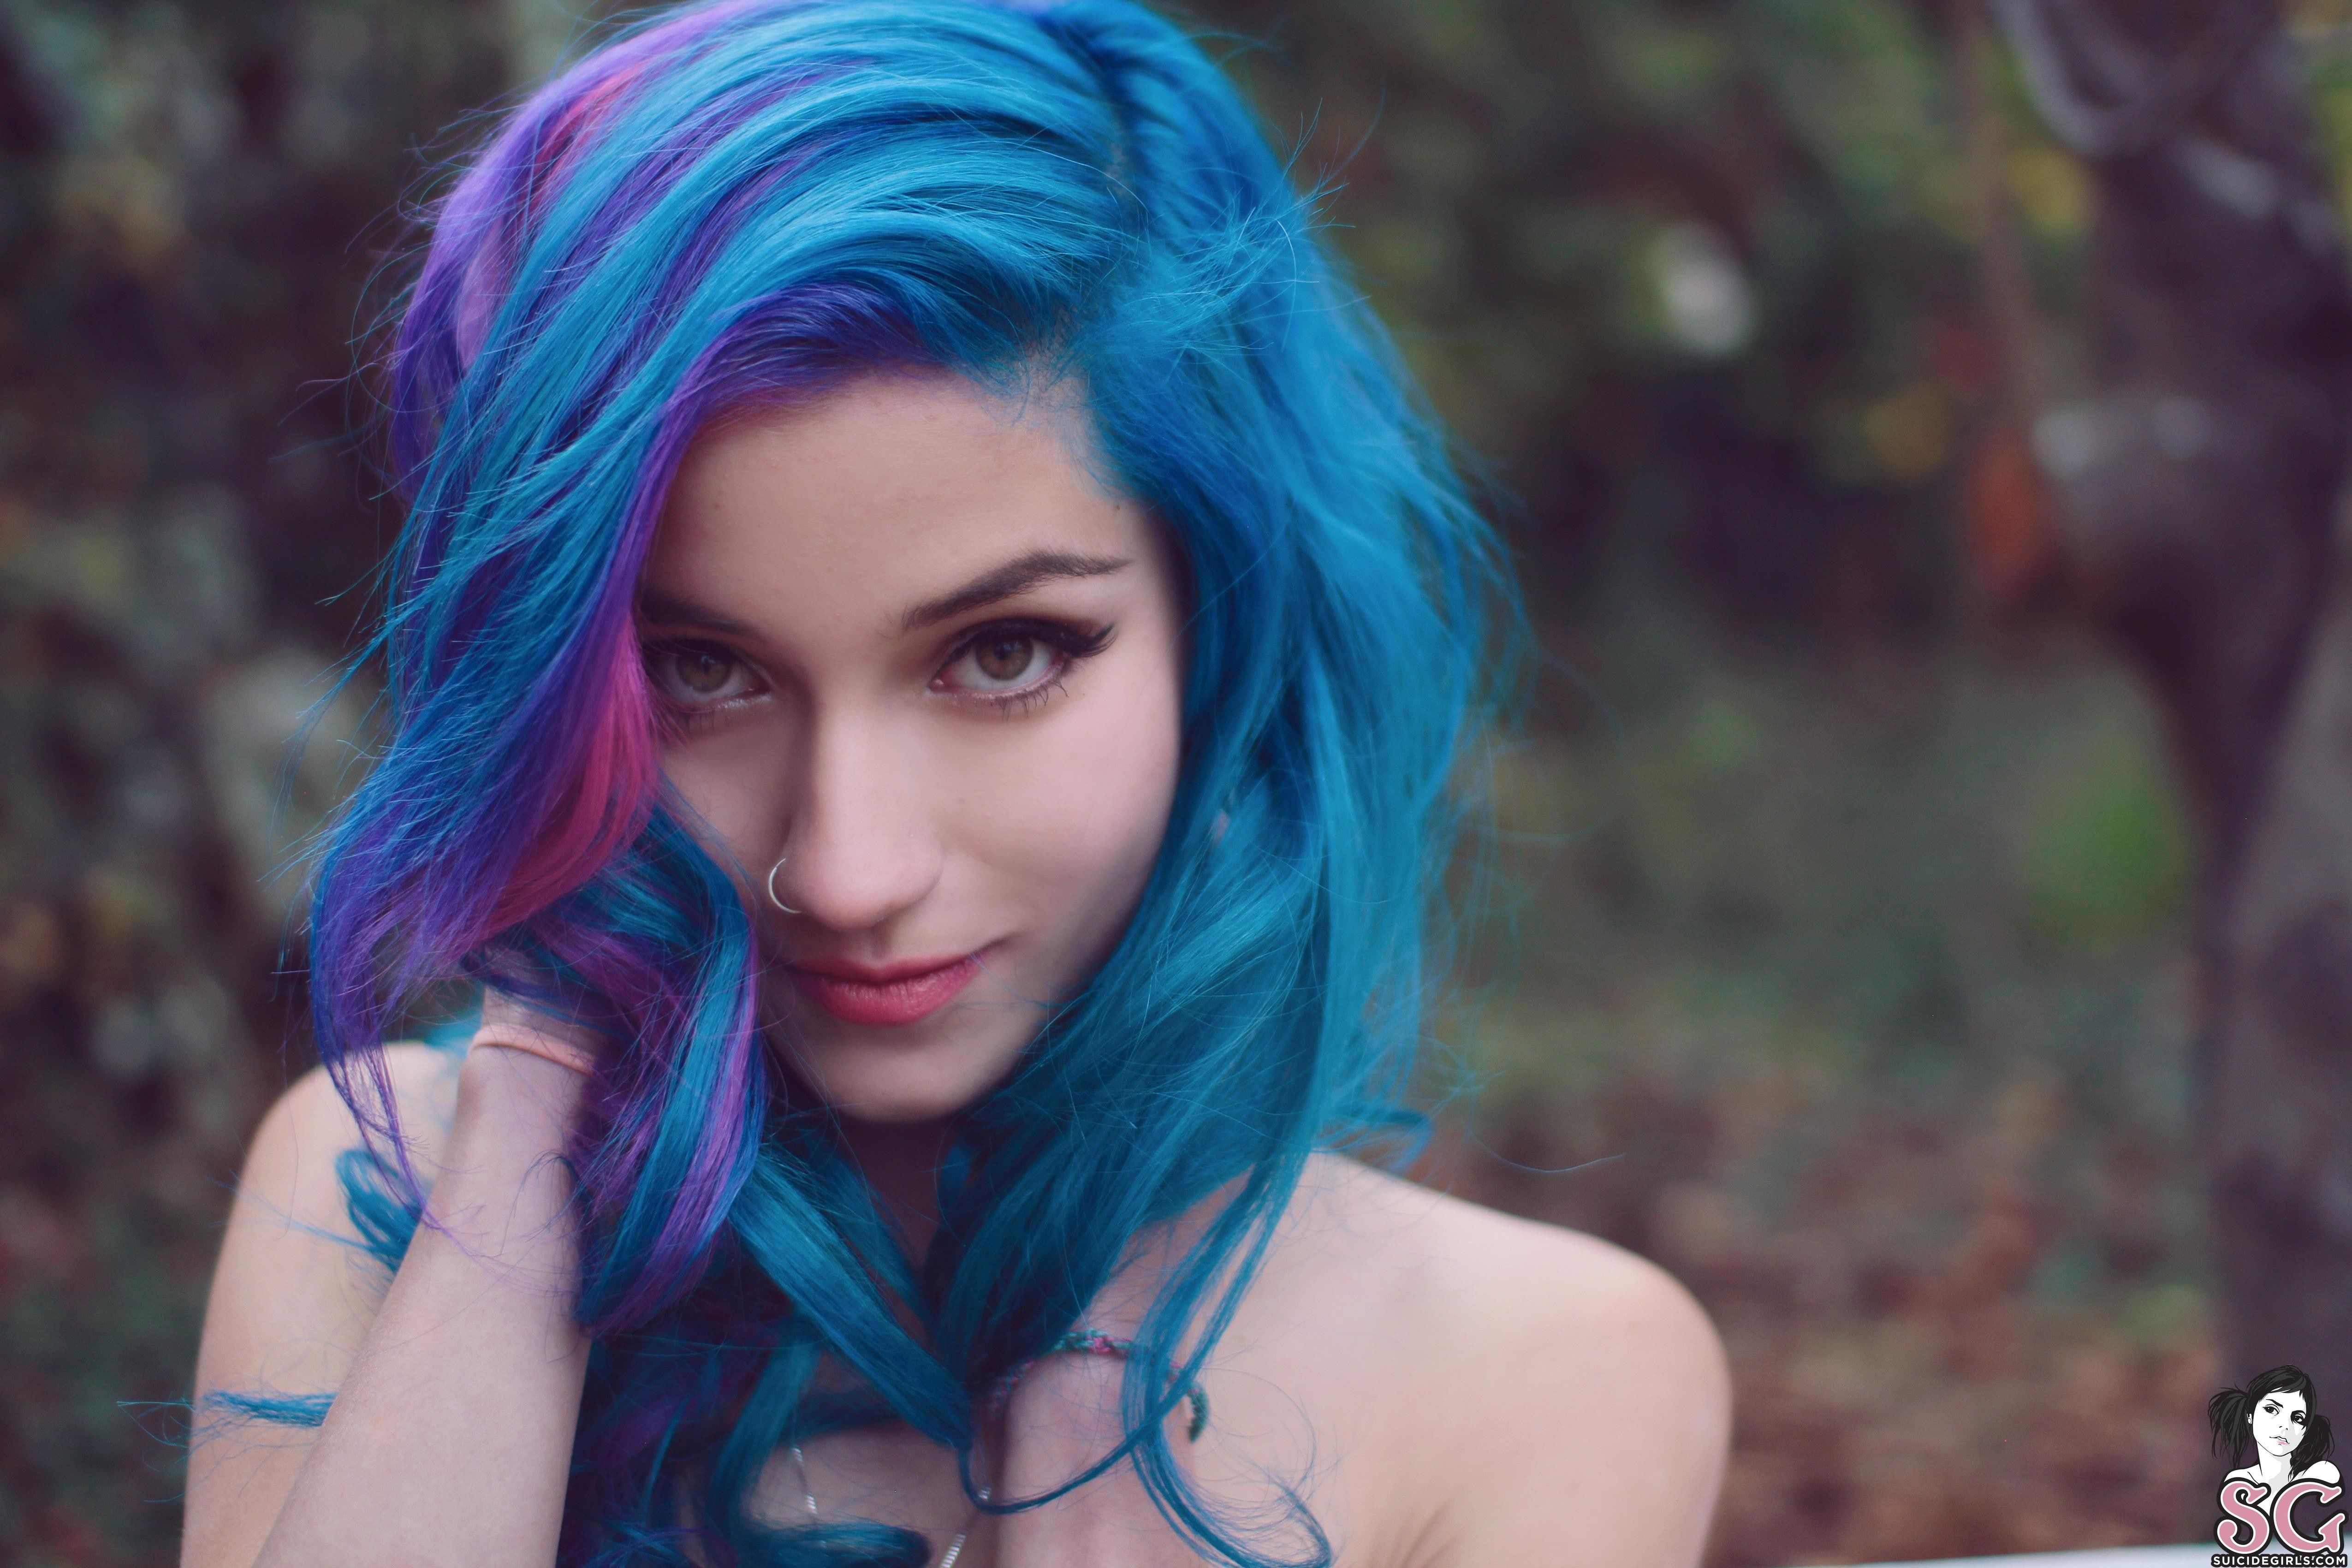 Blue hair girl selfie - wide 5